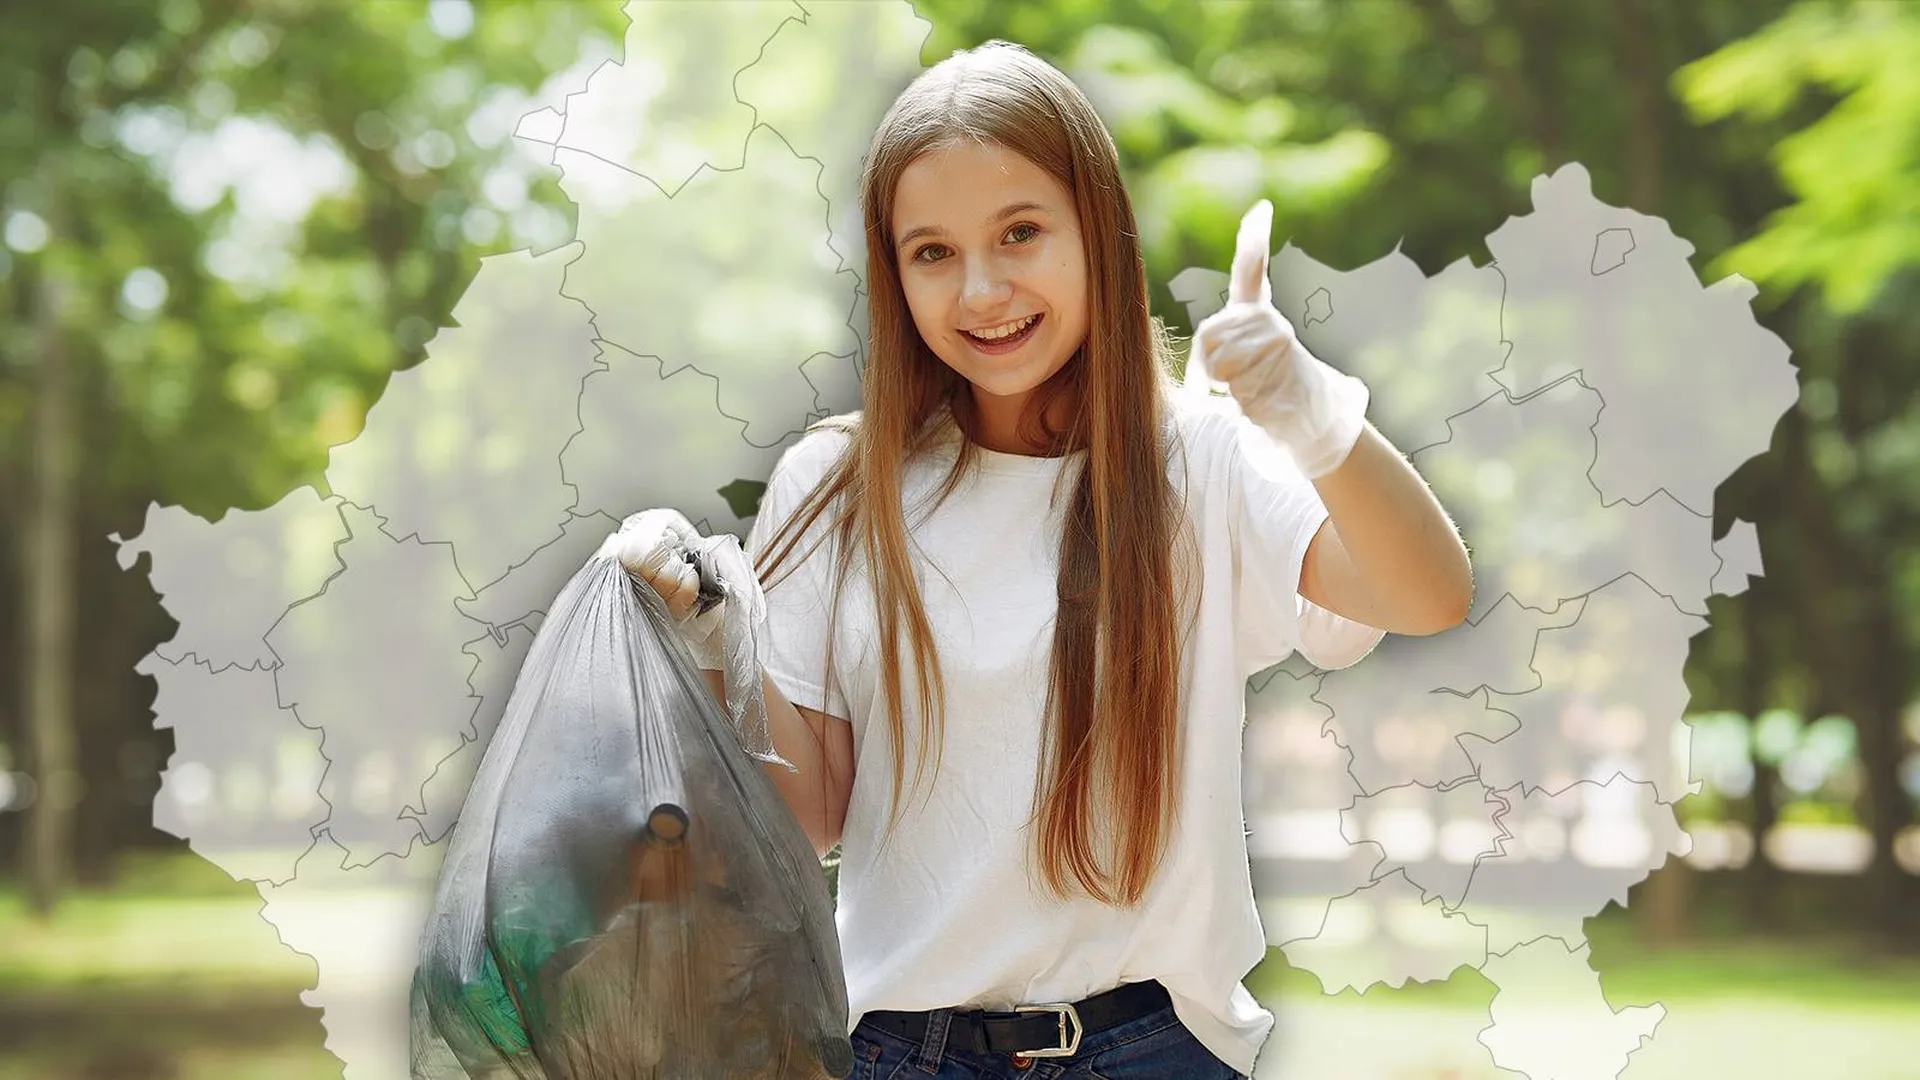 Ребенок с пакетом мусора на фоне карты Подмосковья